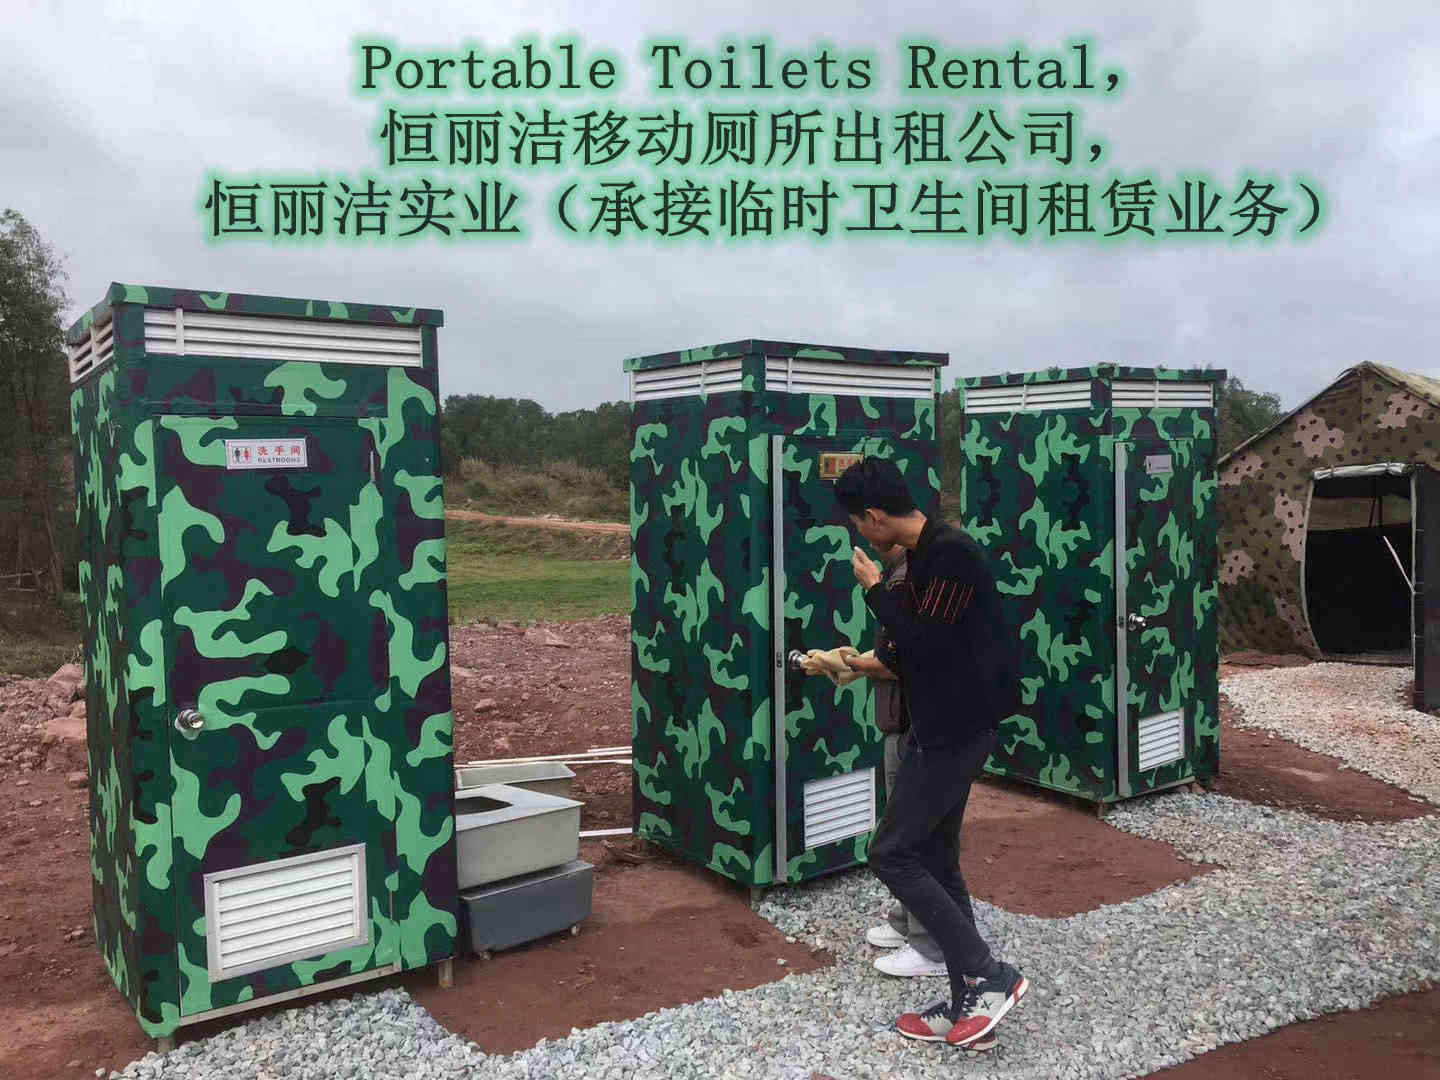 惠州活动卫生间出租移动厕所租赁